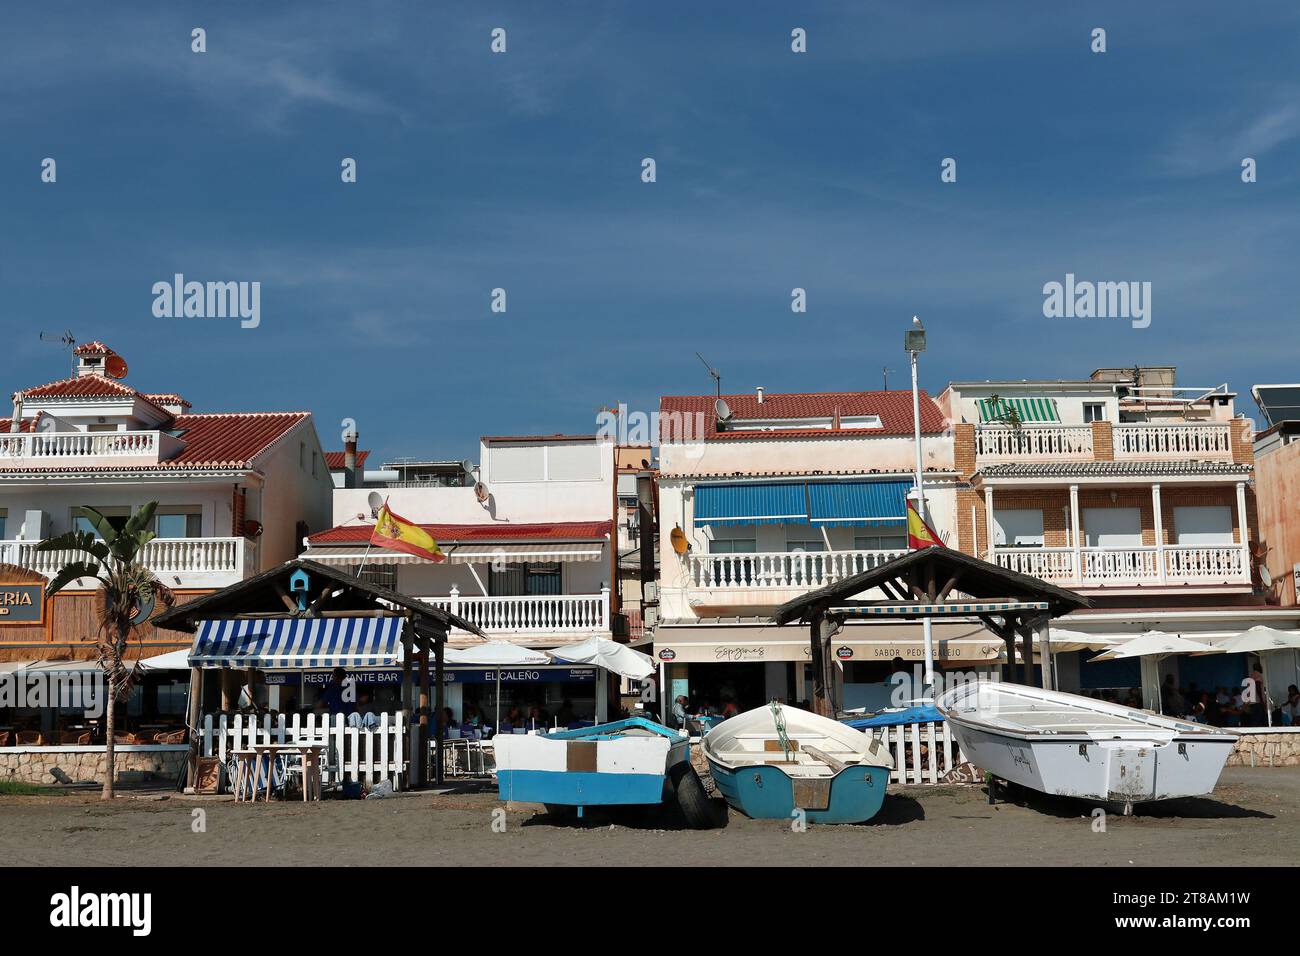 Villaggio di pescatori di Pedregalejo, Malaga: Le barche da pesca si trovano sulla sabbia di fronte al lungomare con i suoi chiringuitos e bancarelle di barbecue a base di pesce Foto Stock